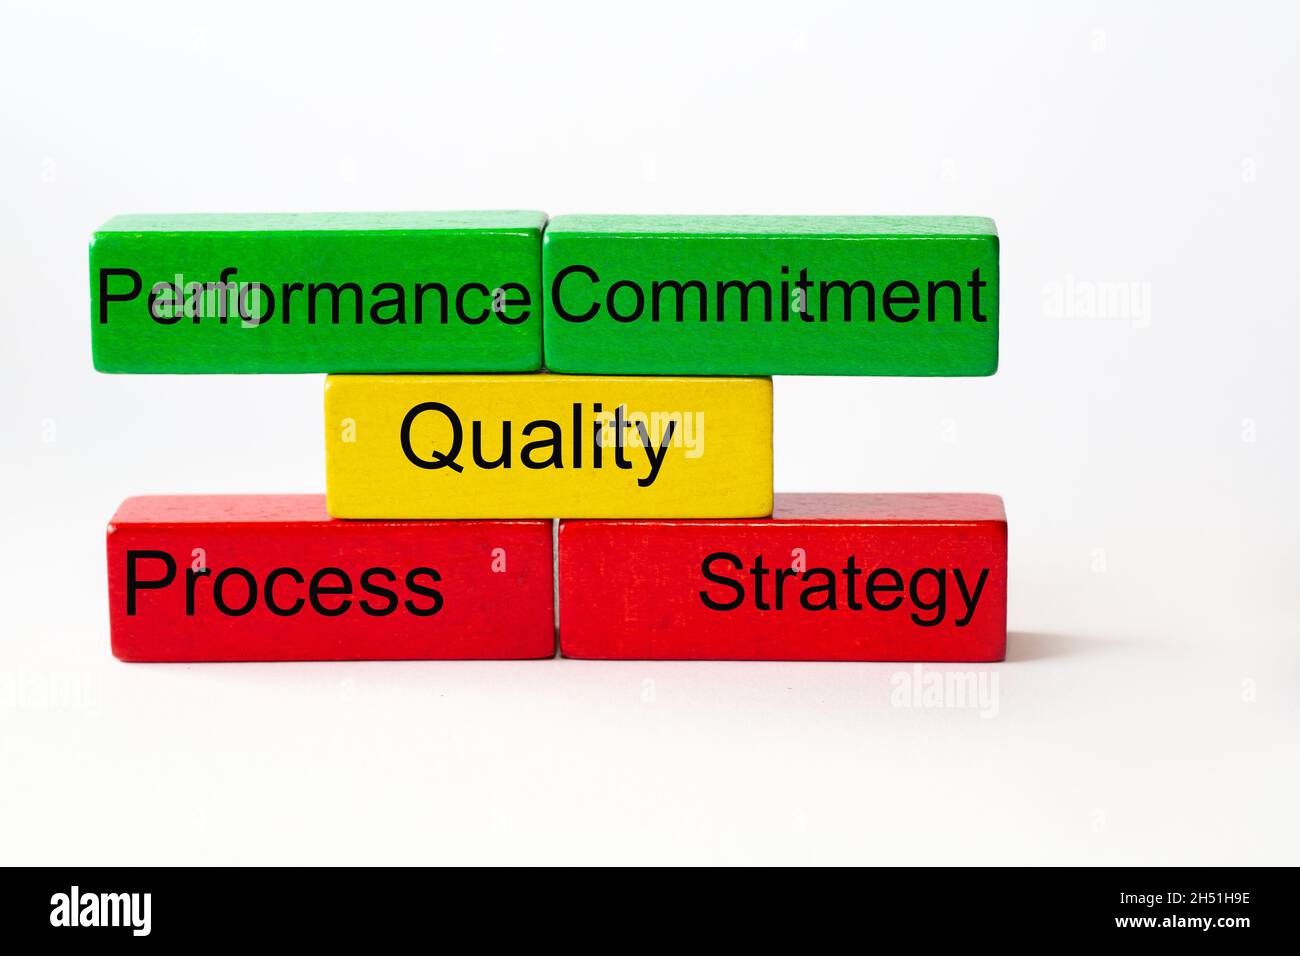 Qualité, engagement, stratégie, processus, performances,se tient sur des blocs de jouets colorés isolés sur fond blanc Banque D'Images